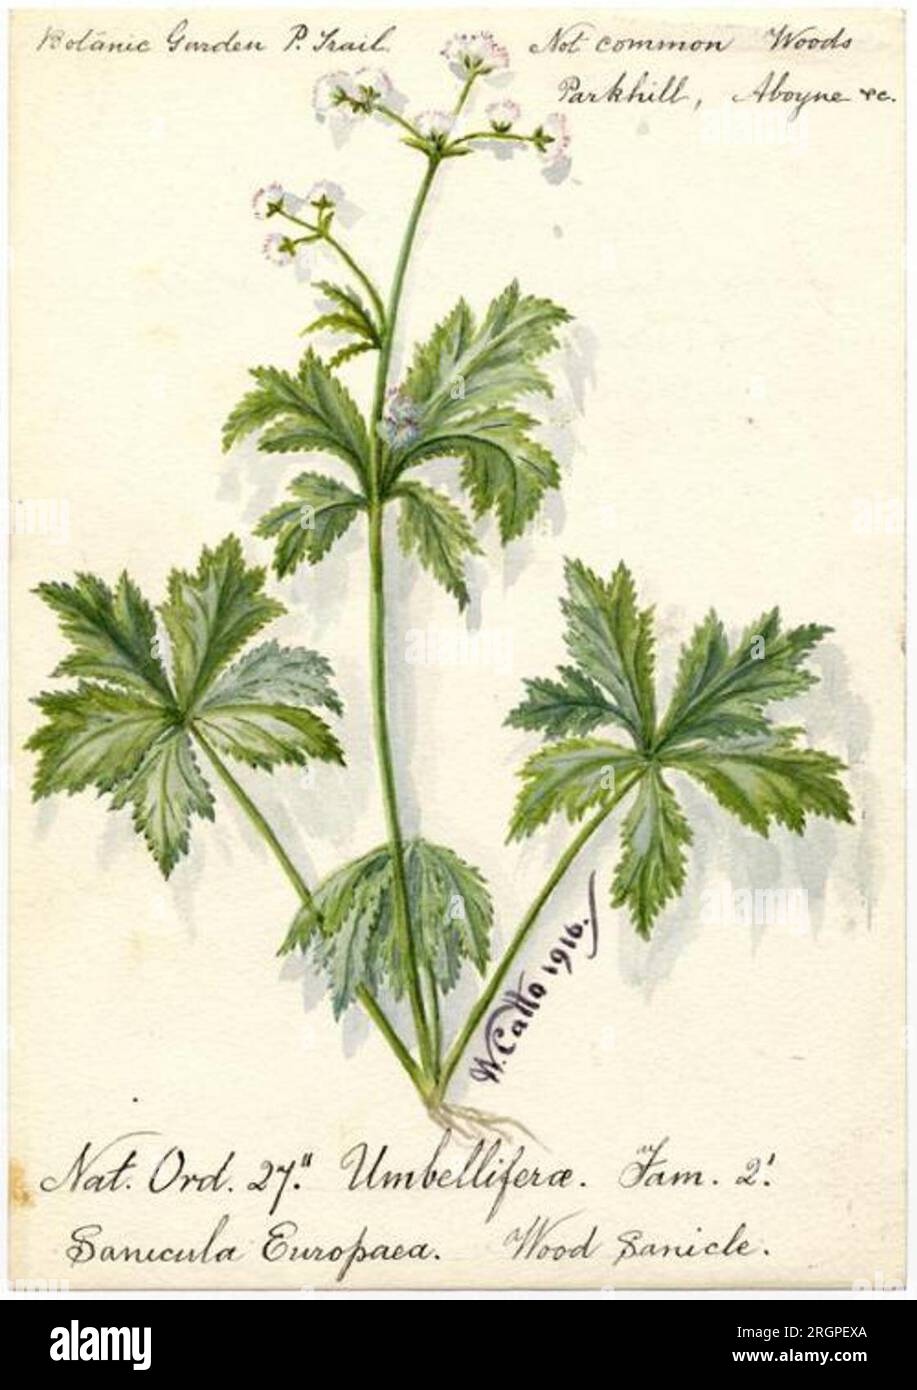 Wood Sanicle (Sanicula Europaea) - William Catto 1916 by William Catto Stock Photo